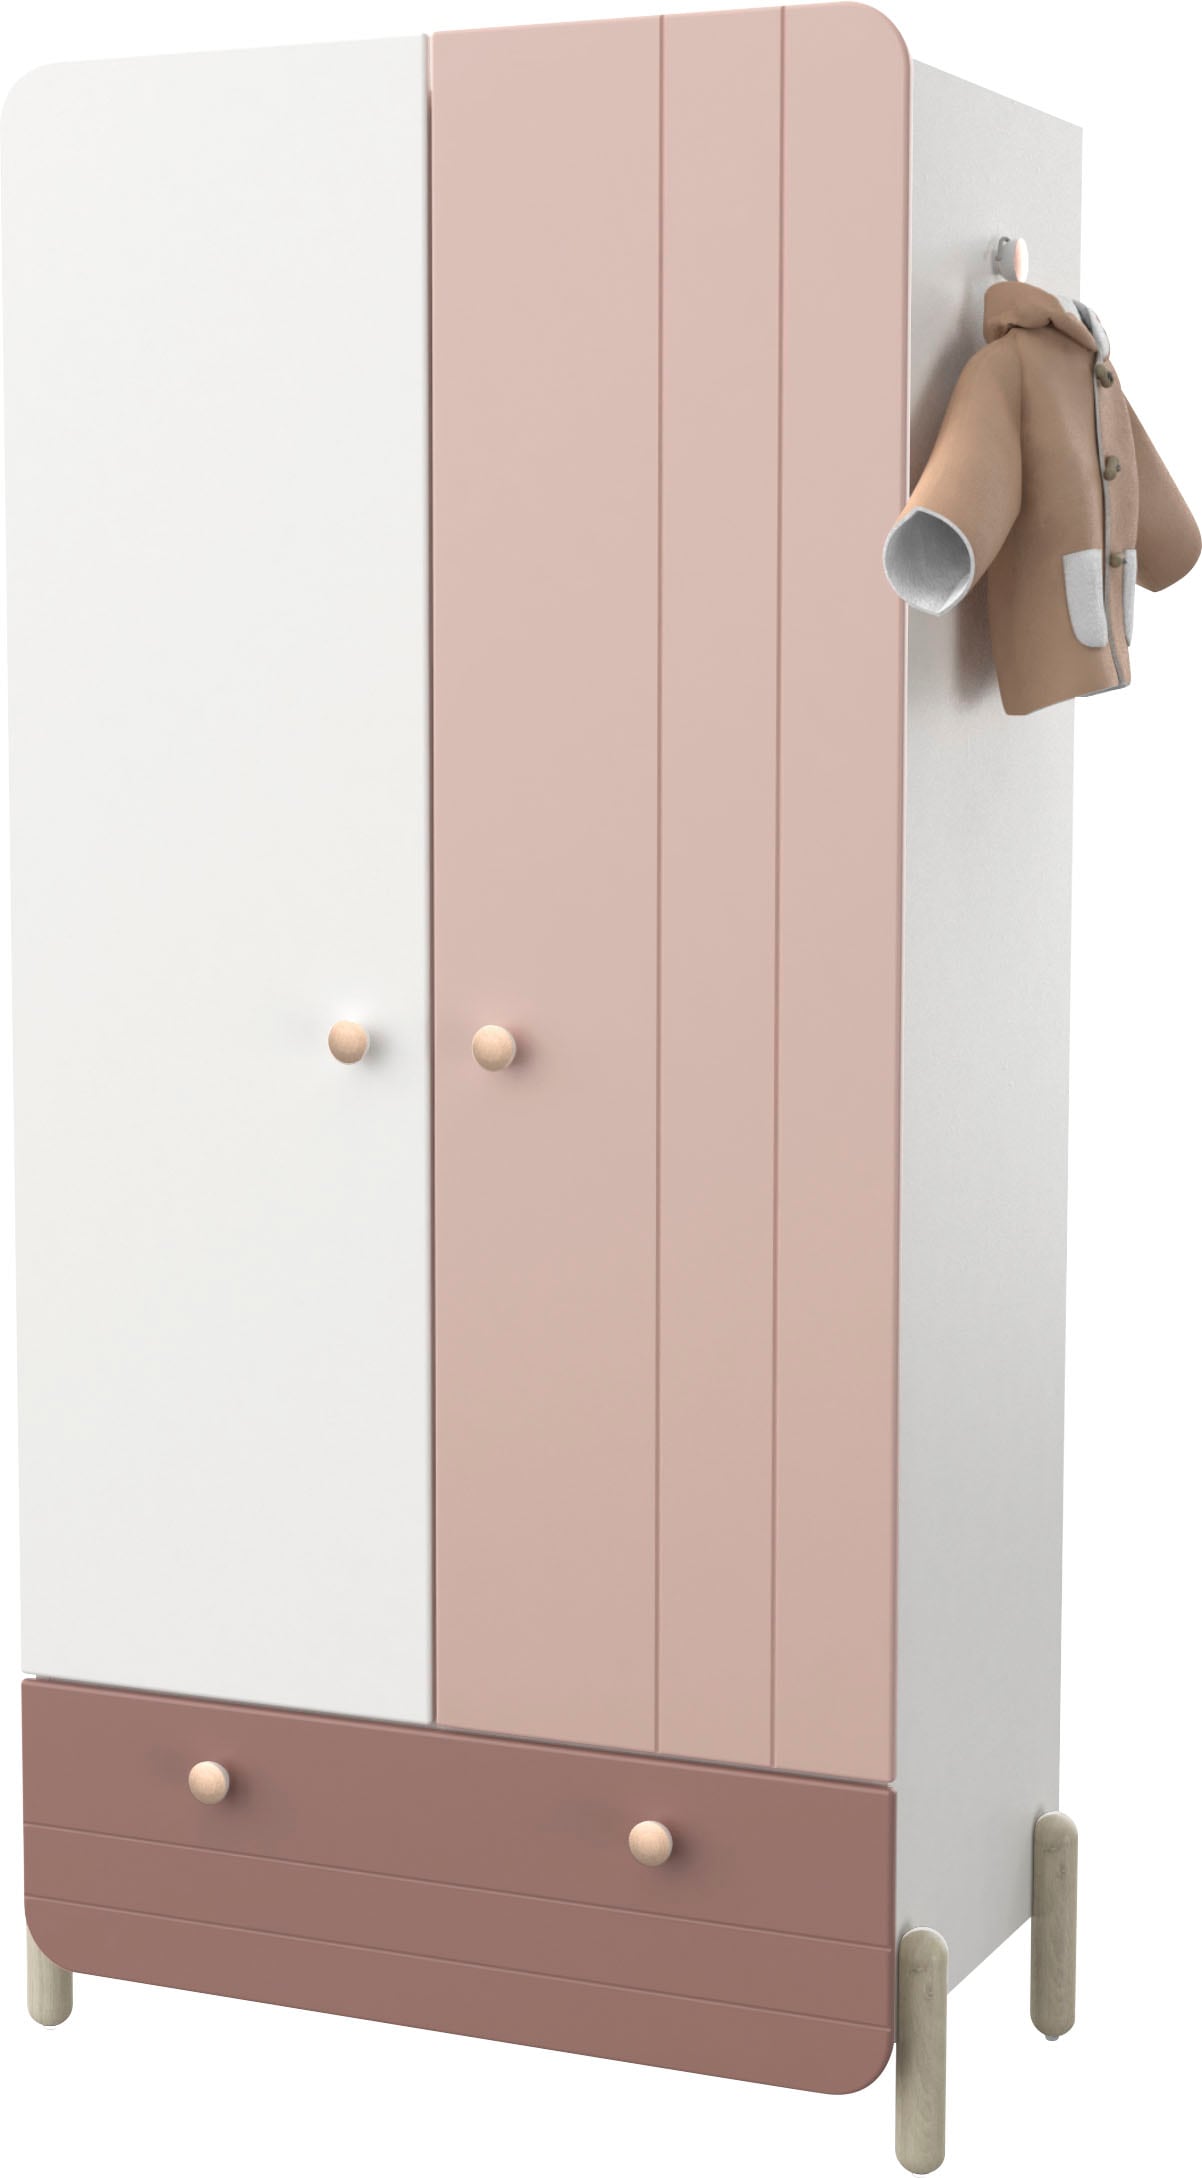 Demeyere GROUP Kleiderschrank »Janne,Breite ca. 90cm, Höhe ca. 180cm, 4 Türen«, mit großzügigen Stauraum und praktische Funktionen